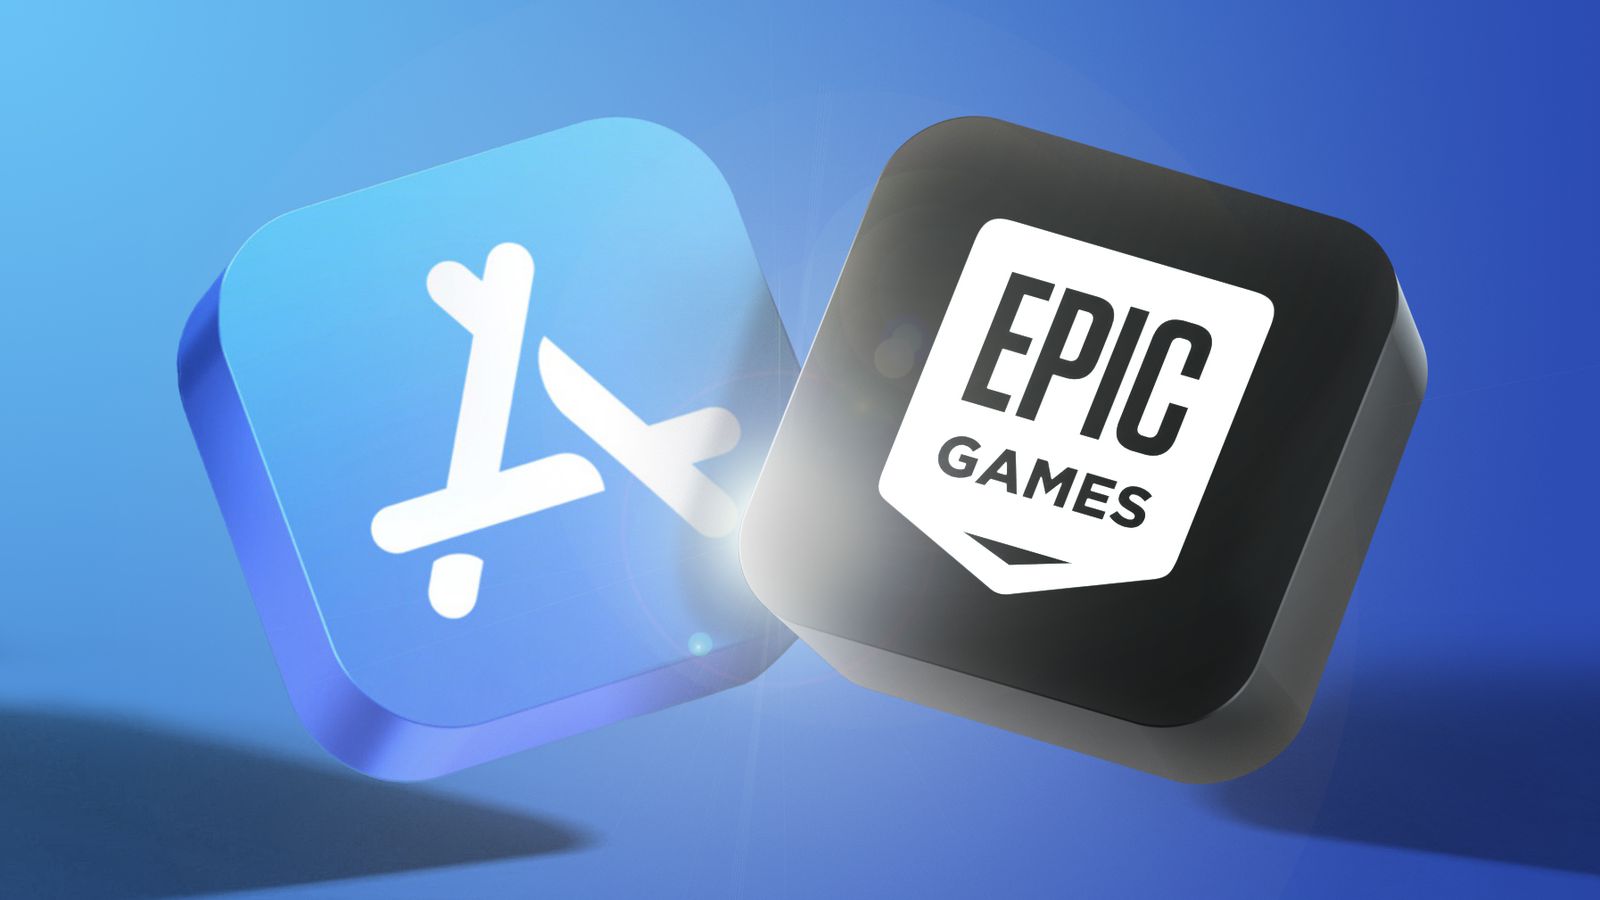 Cuộc chiến pháp lý kèo dài giữa Apple và Epic Games đi đến hồi kết